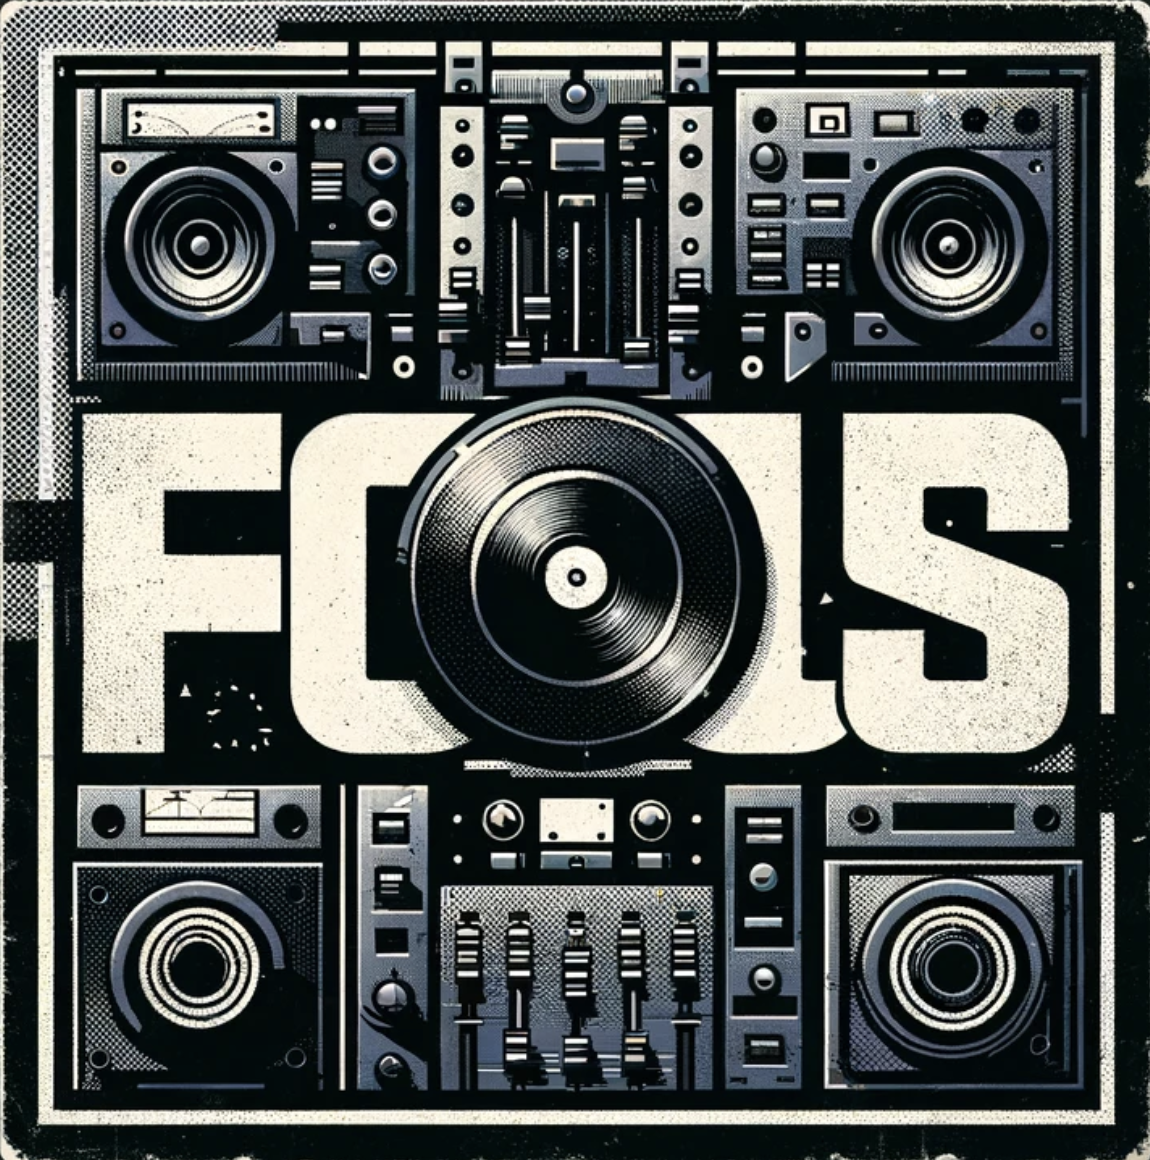 FOCUS - 808 MIDI PATTERNS